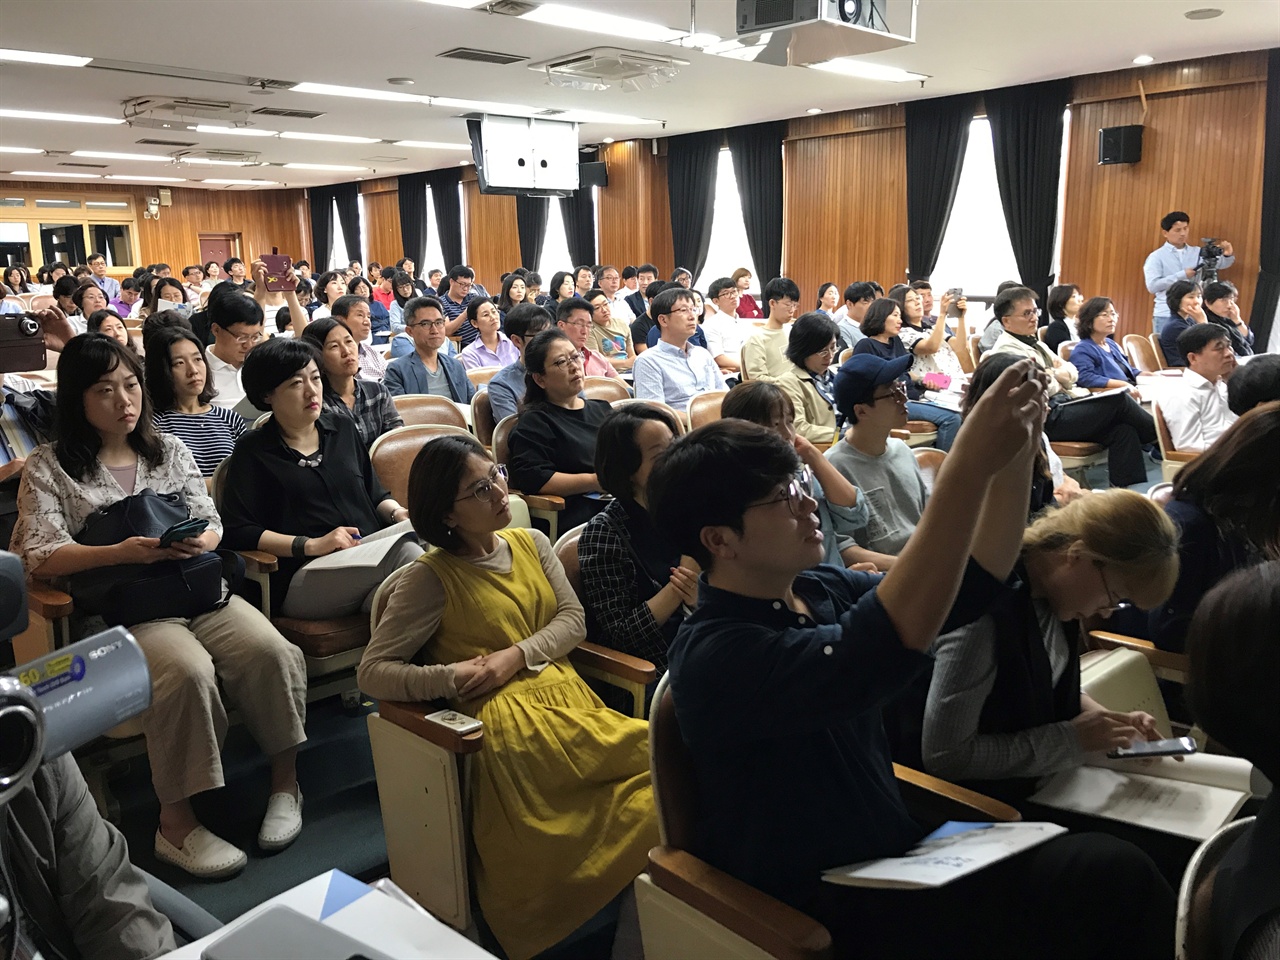 2017년 9월 23일 서울시교육청에서 IB 도입 타당성 여부를 논의하기 위해 마련한 교사 세미나 장면.